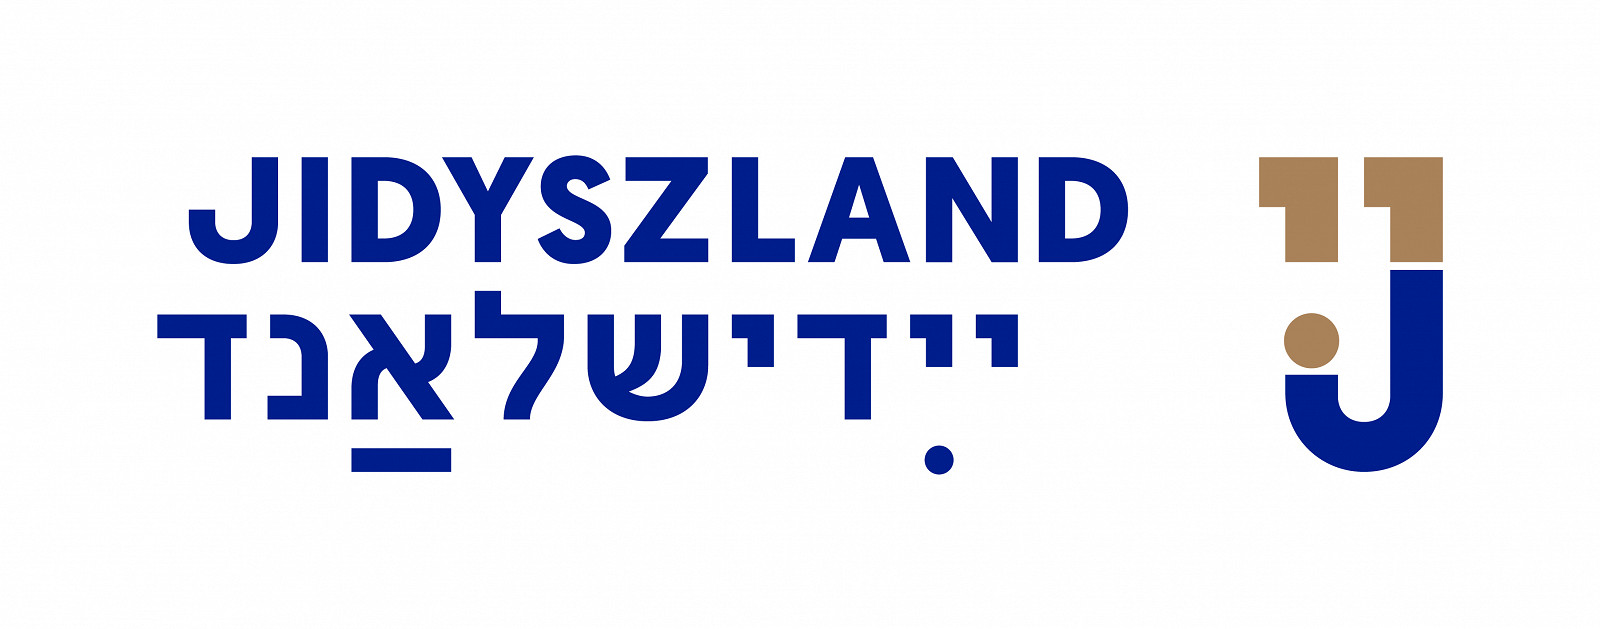 zih-jidyszland-znak-RGB_poziom-BLUEGOLD.jpg [307.24 KB]